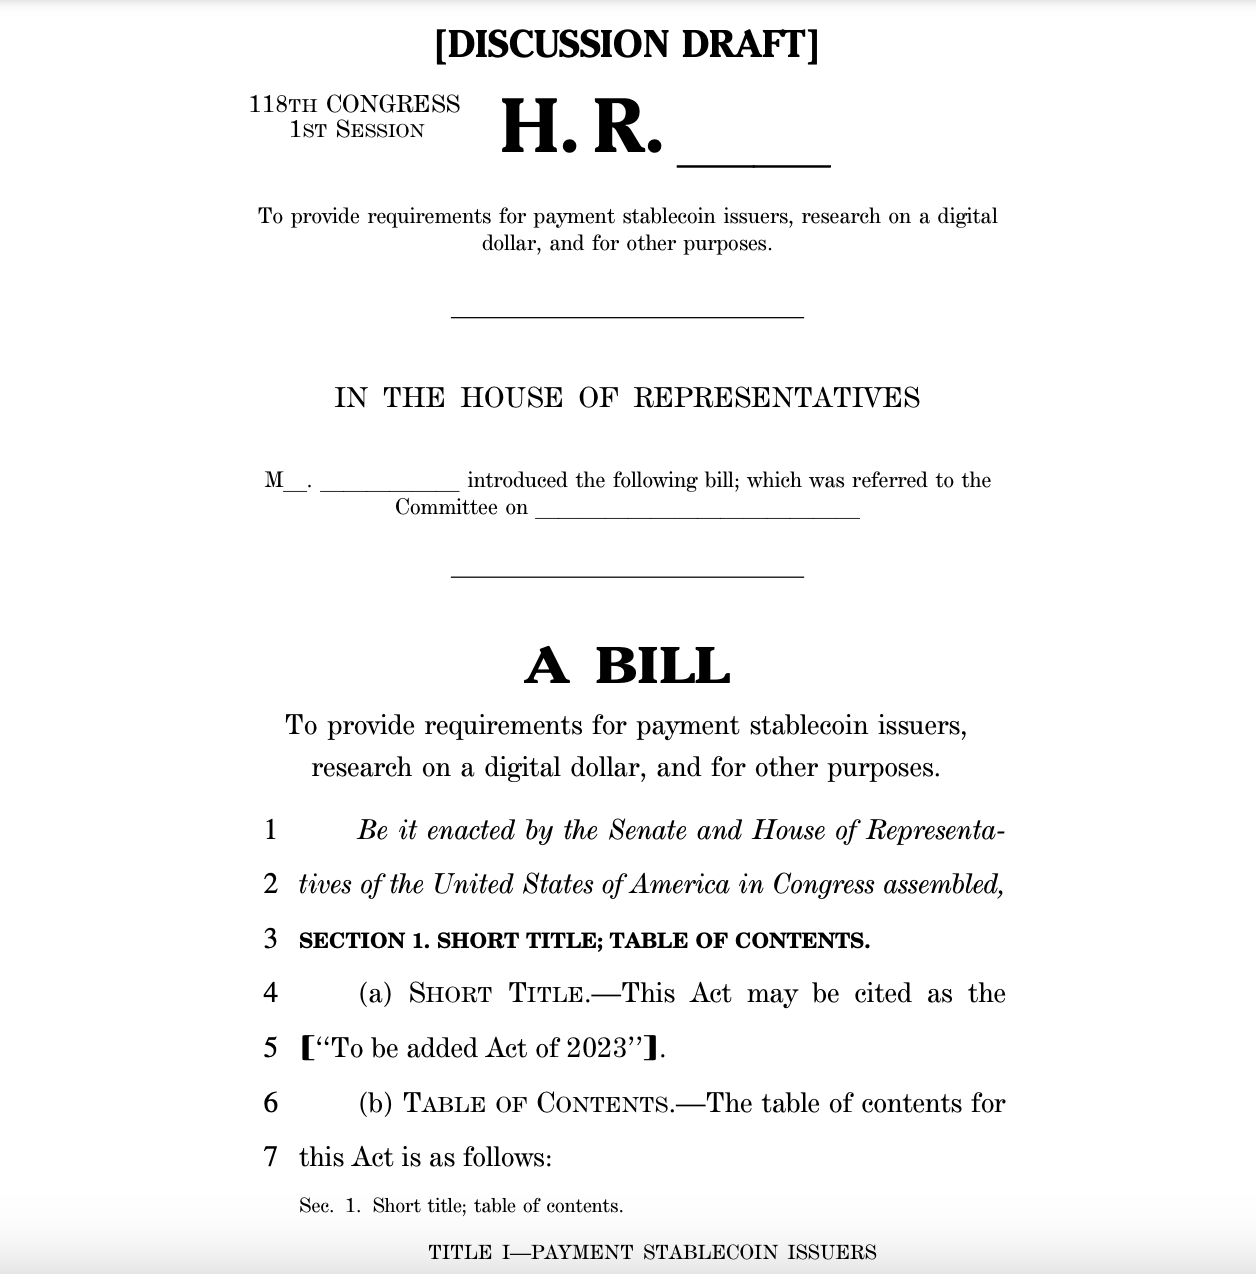 Den amerikanske kongres præsenterer nyt udkast til lovforslag for stablecoins